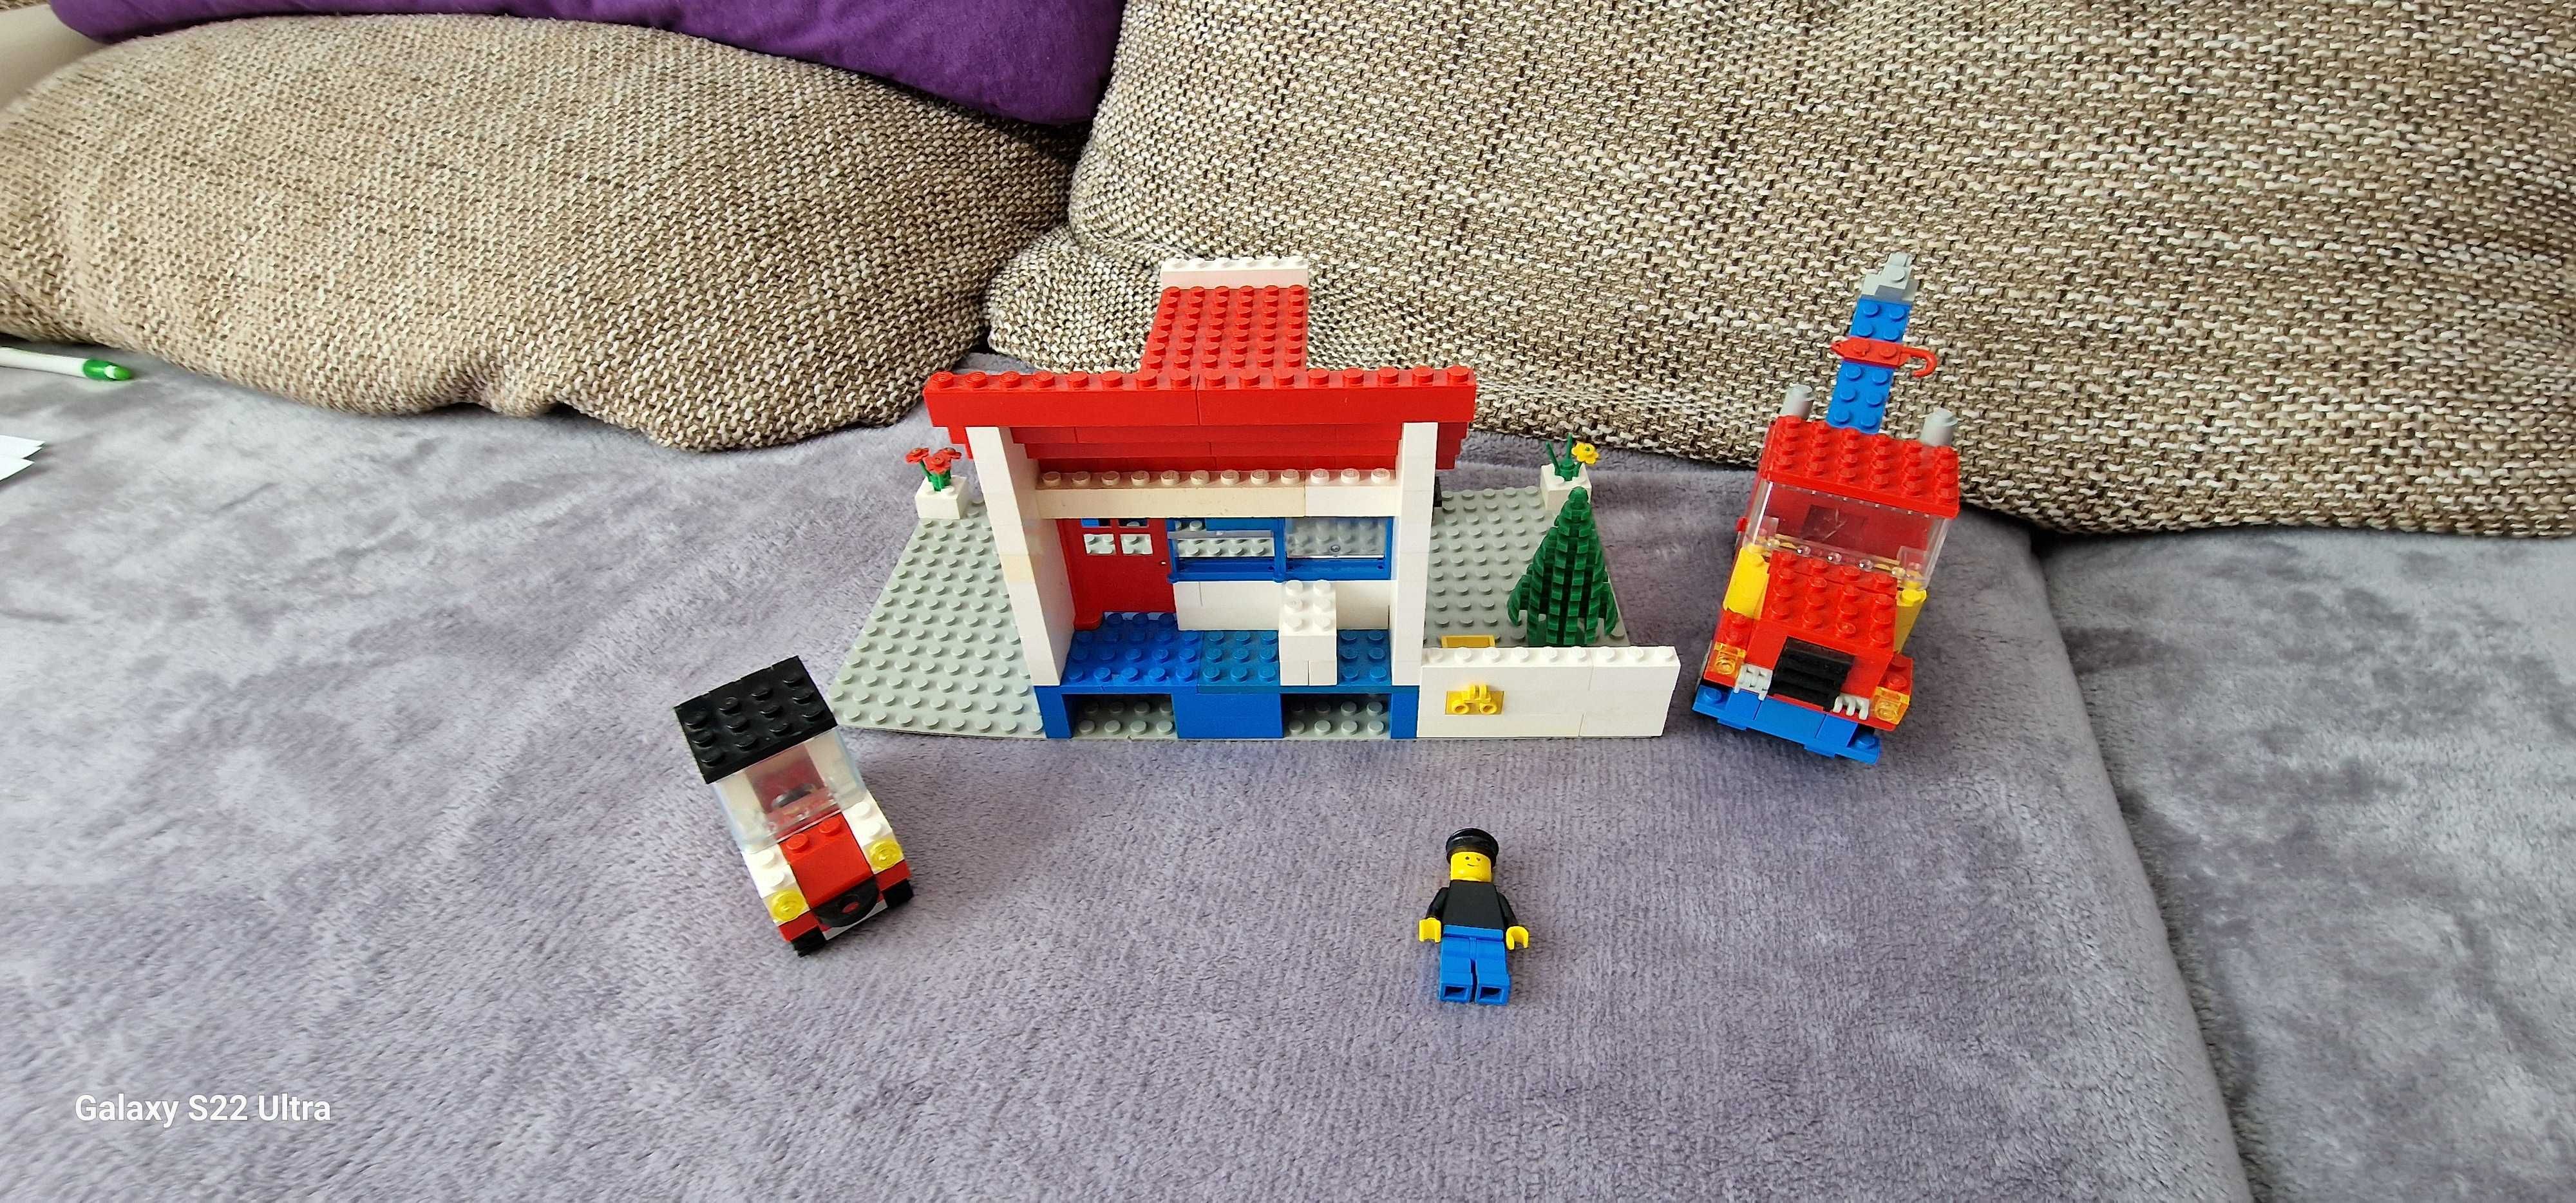 Lego 720 - Basic Building Set - an 1985